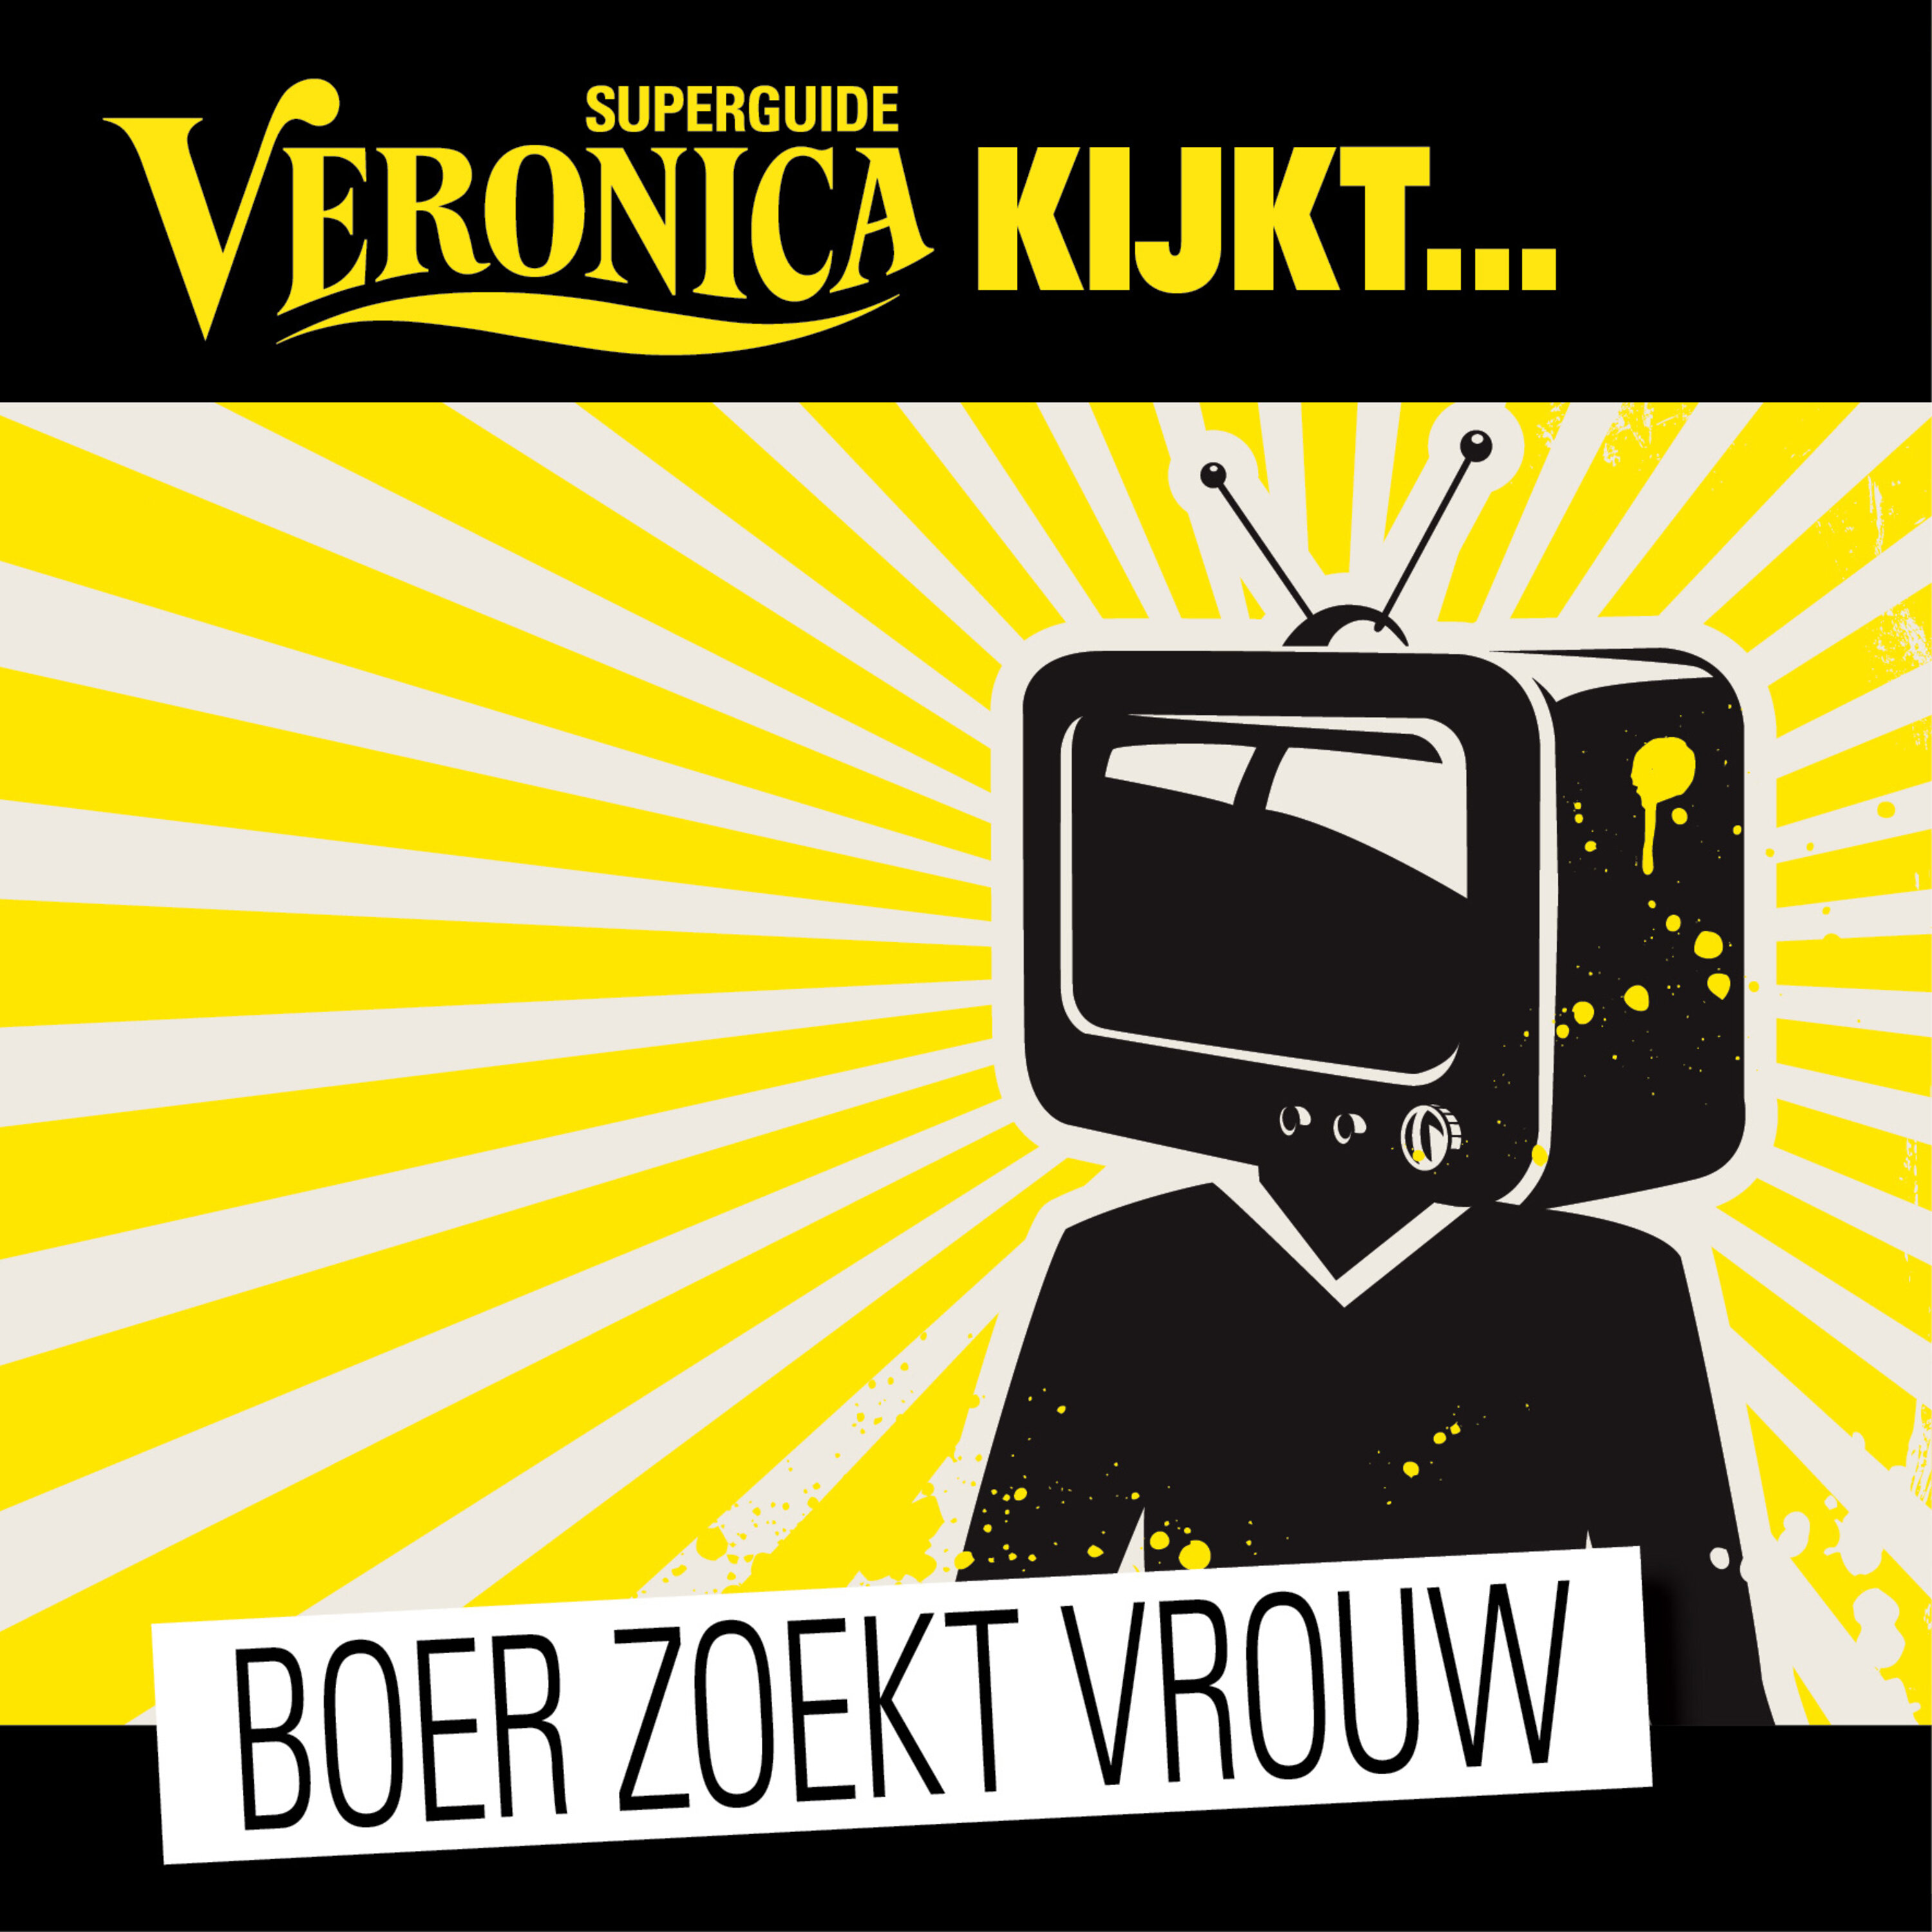 Veronica Superguide kijkt Boer zoekt Vrouw logo